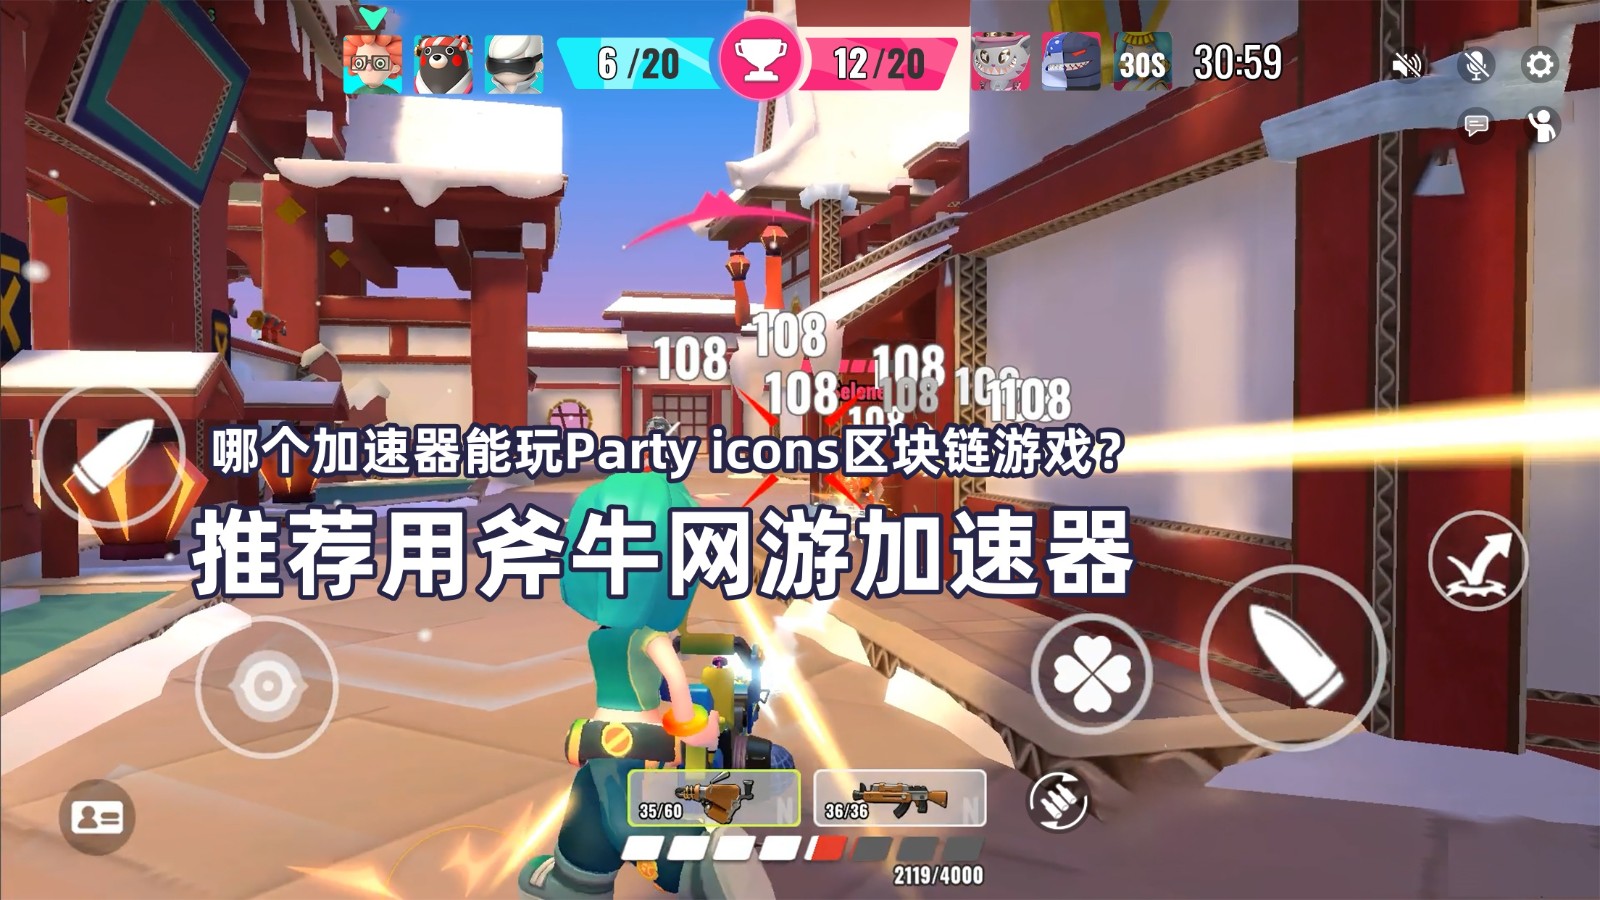 斧牛加速器支持Party icons游戏加速.jpg